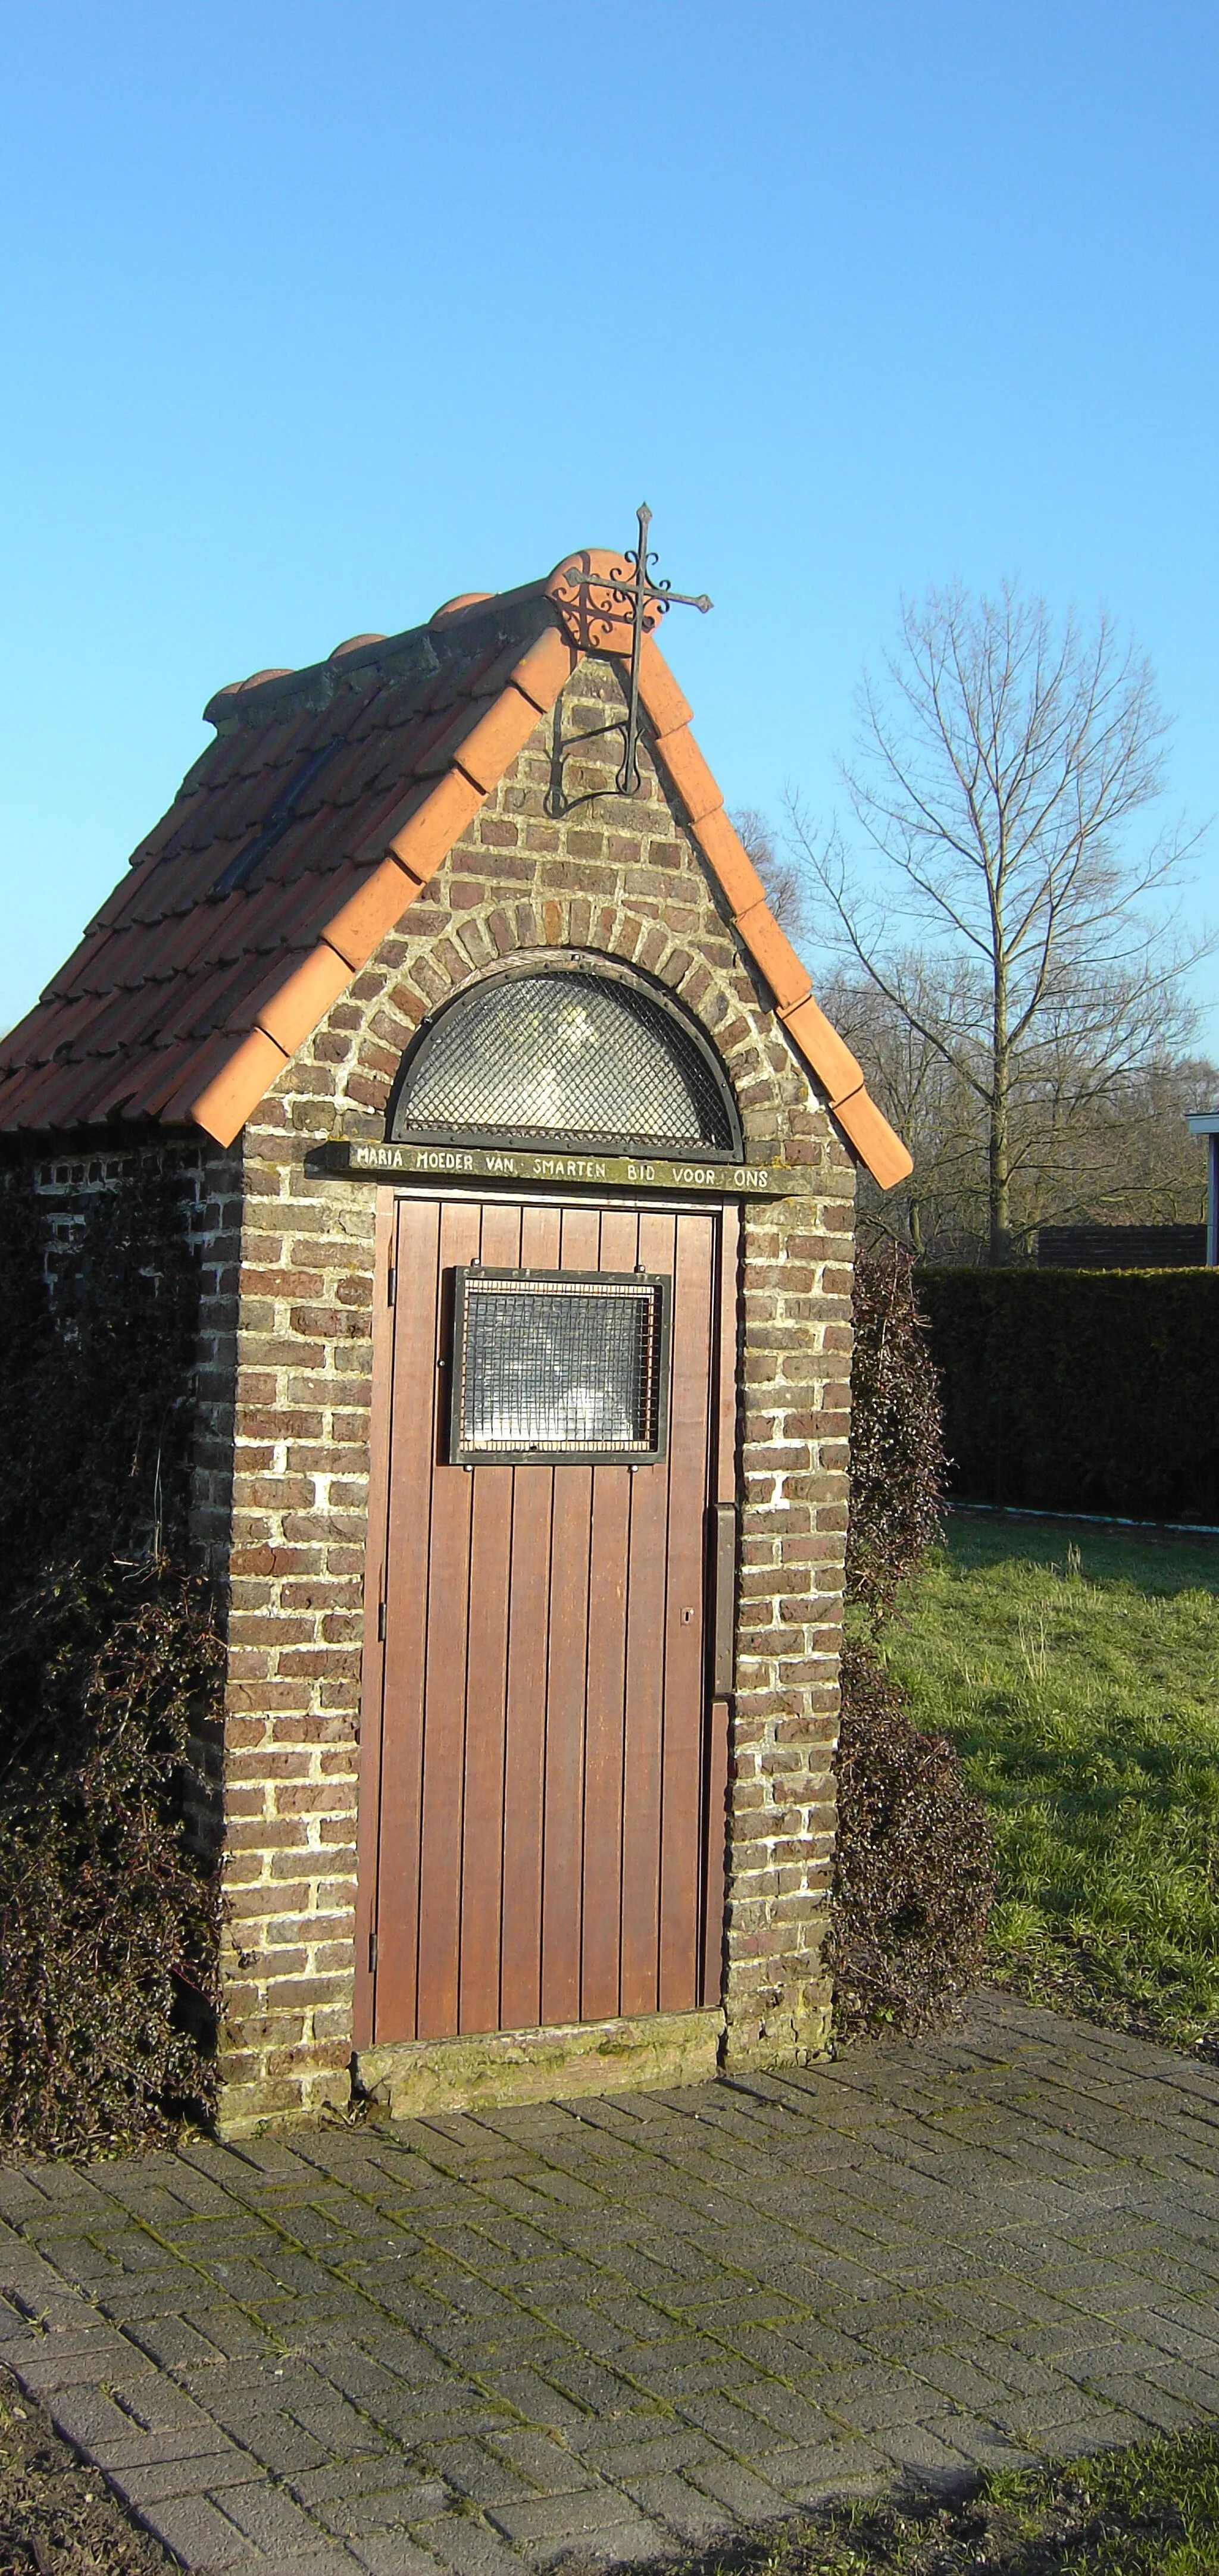 Image of Prov. Oost-Vlaanderen